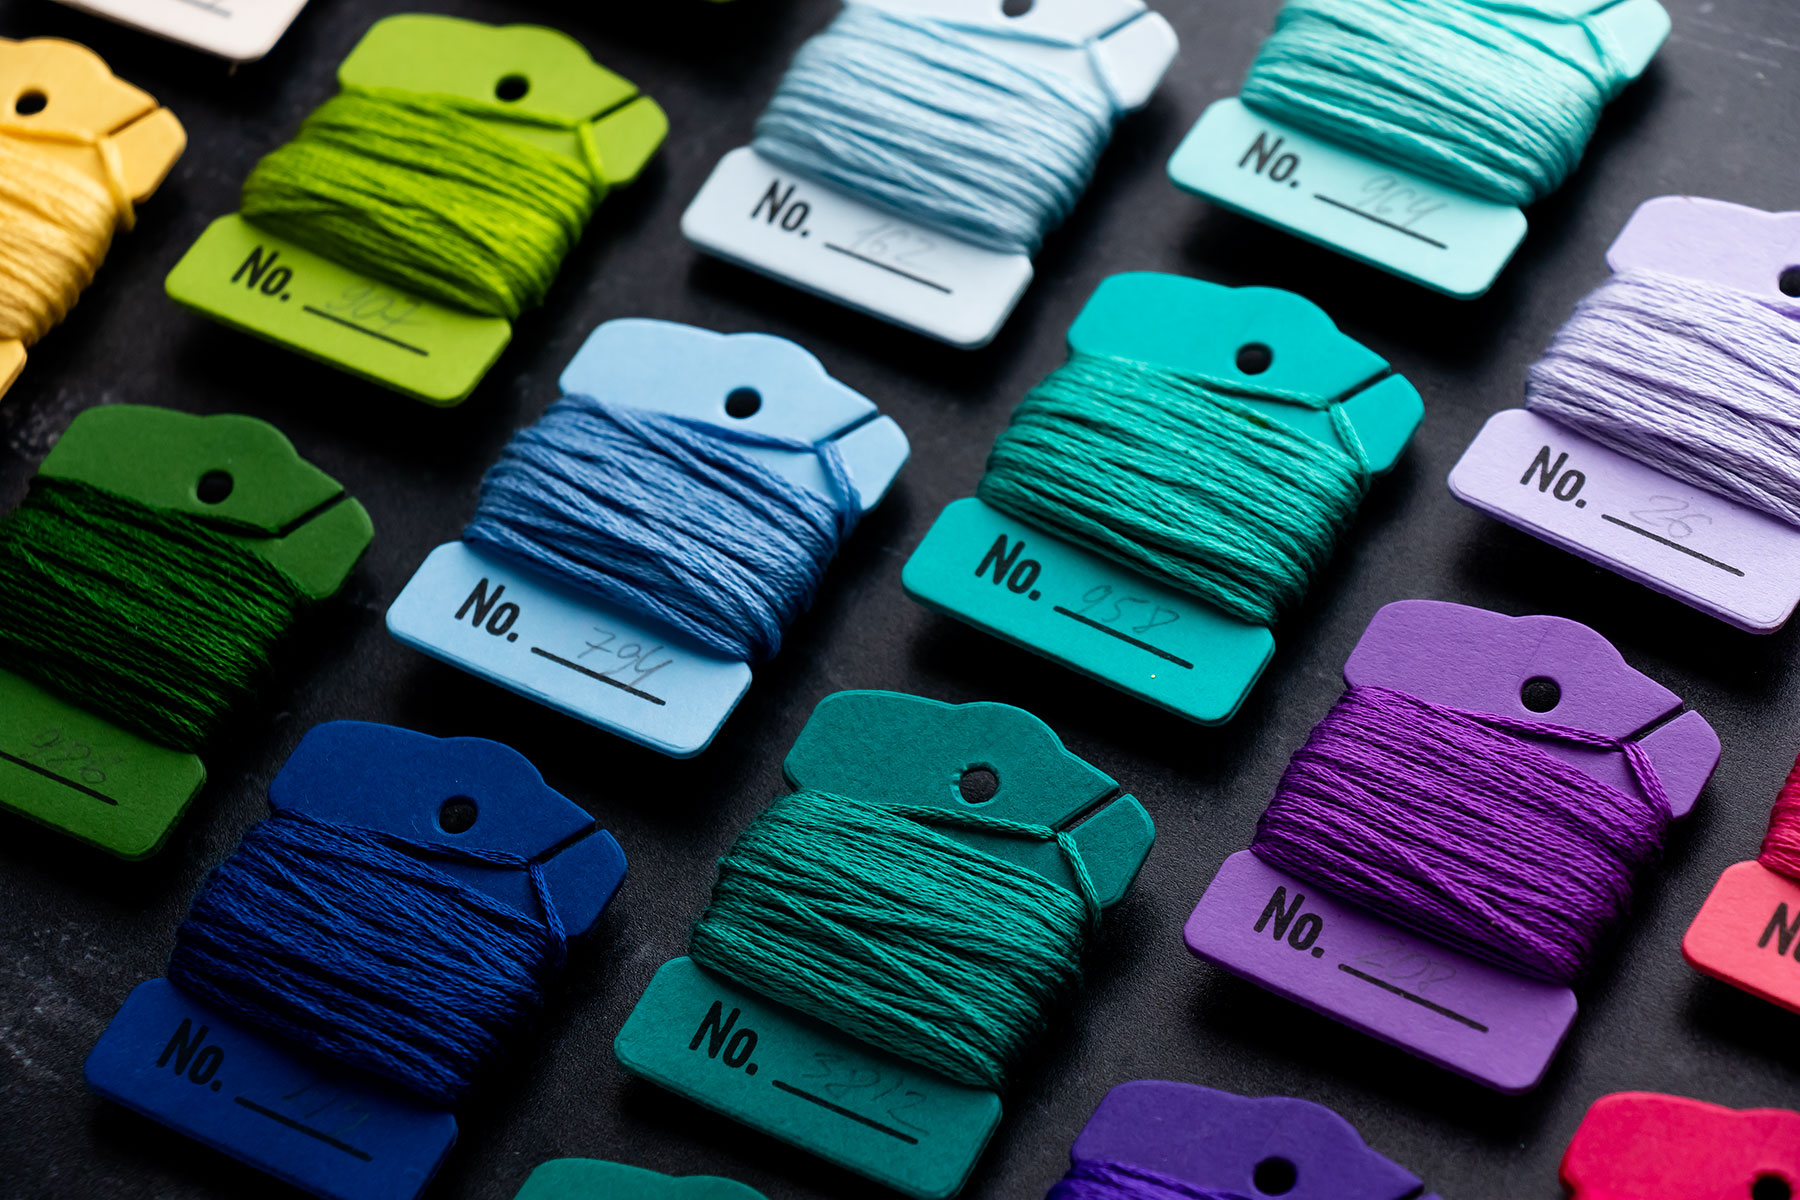 DMC Color Essentials Floss Bundle Warm 10-Pack - Spellbinders